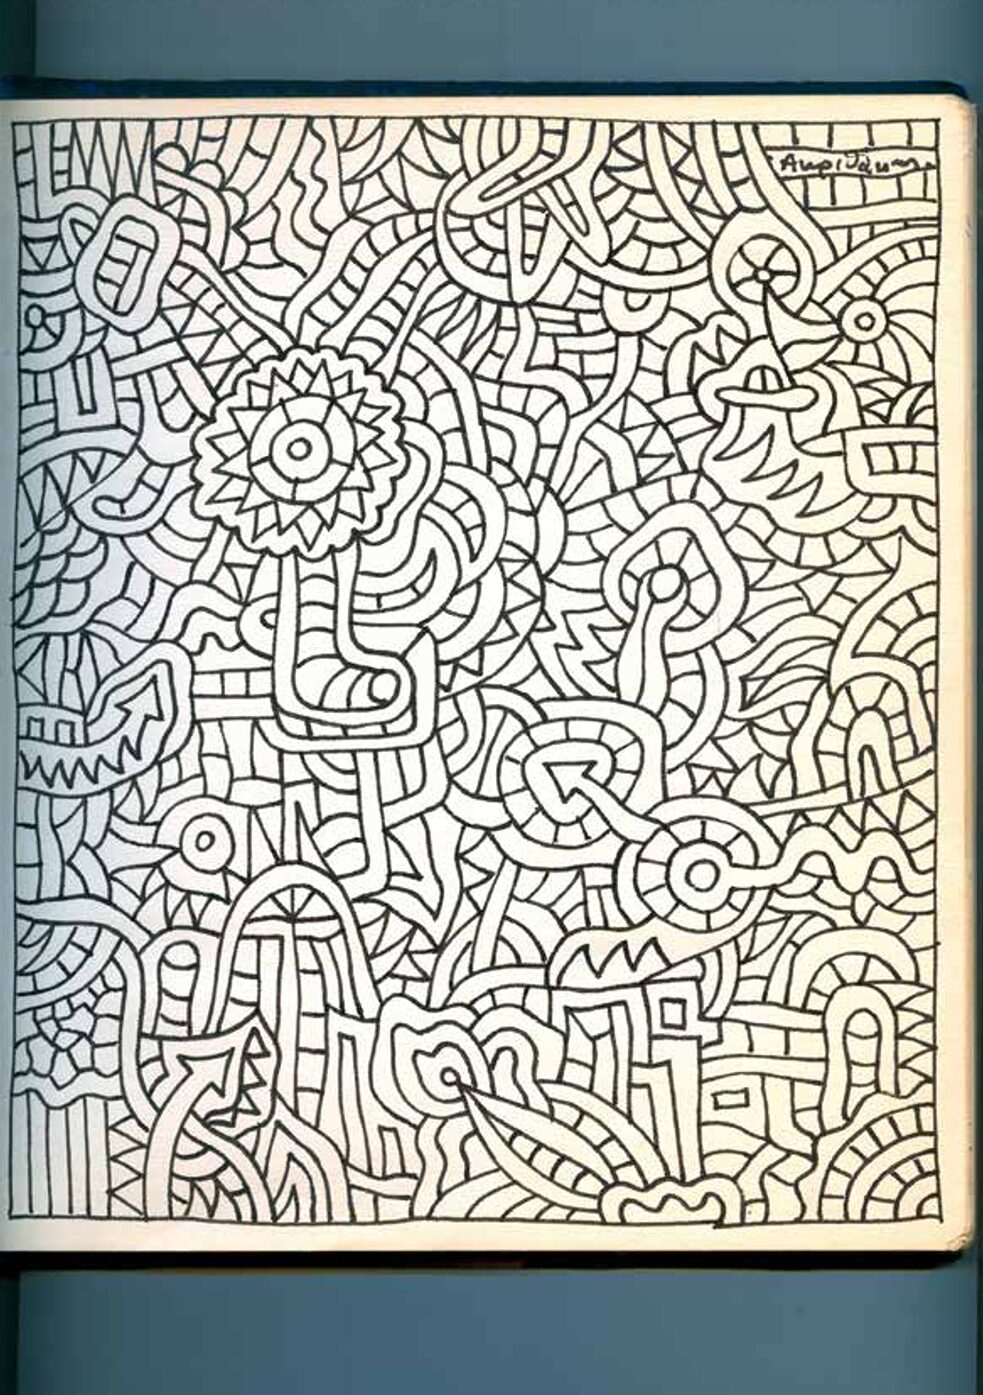 Σχέδιο του Αλέξη Ακριθάκη στο βιβλίο επισκεπτών του Εργαστηρίου Σύγχρονης Τέχνης 1968‒1969.